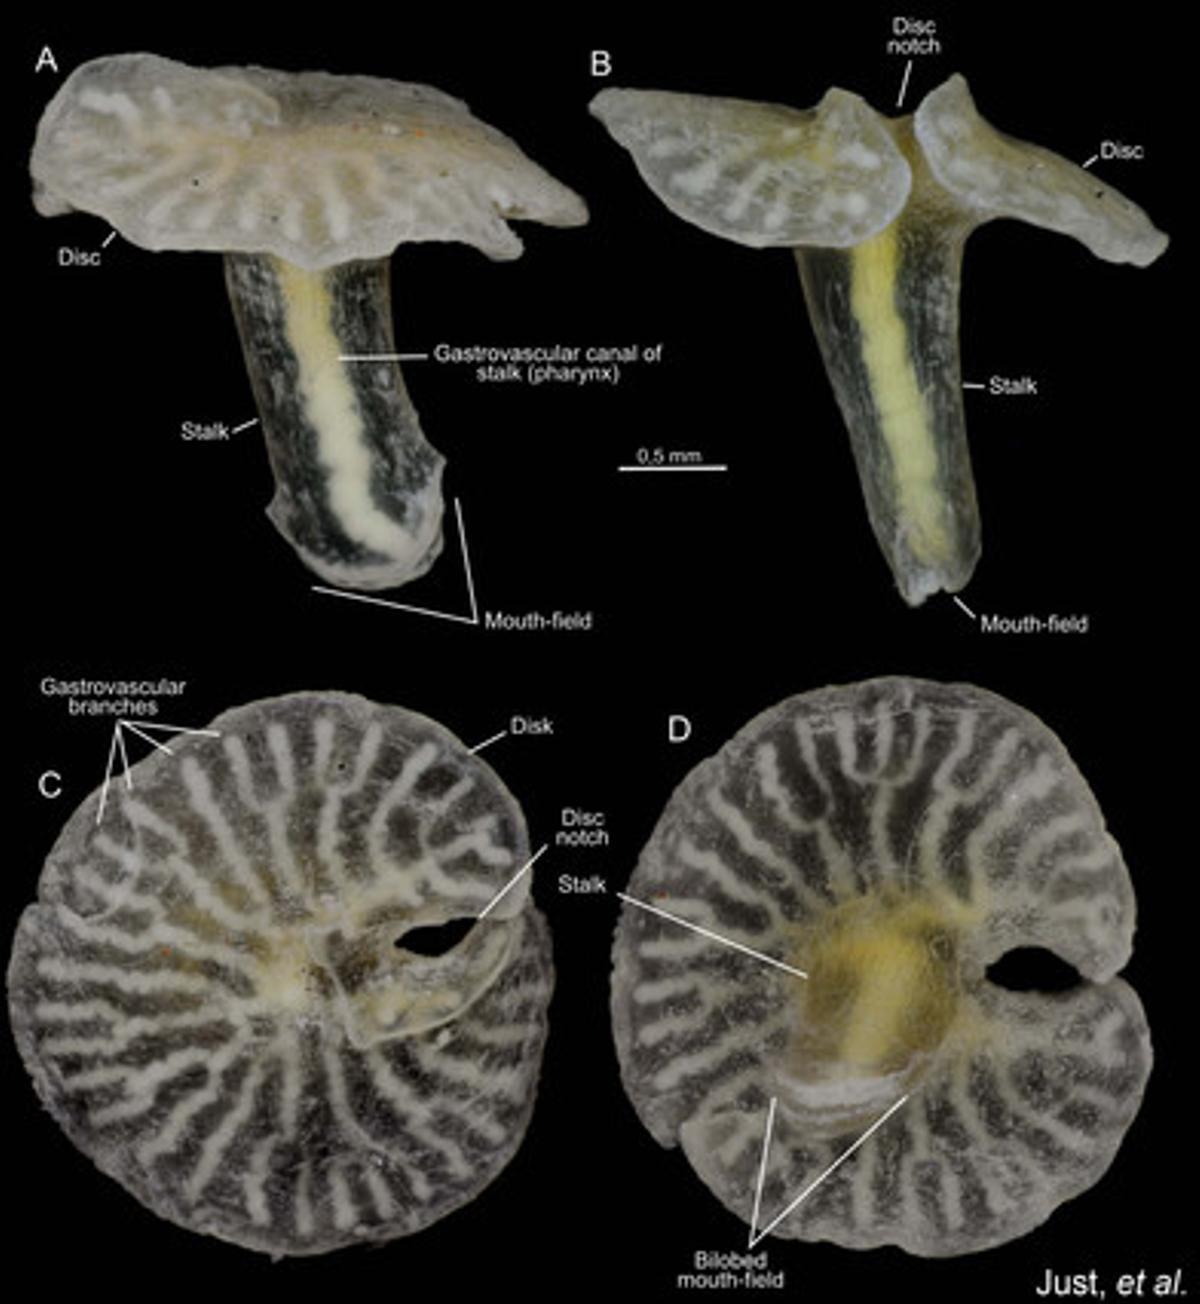 Aparentemente relacionados con las medusas y los corales, los ’Dendrogramma enigmaticas’ son pequeños animales parecidos a las setas, con una boca en el extremo del ‘tallo‘ y el otro extremo con la forma de un disco aplanado. Se encontraron en los fondos marinos de Point Hicks (Australia) a más de 1.000 metros de profundidad. Miden de 8 mm de largo y el disco superior apenas supera los 10 mm.